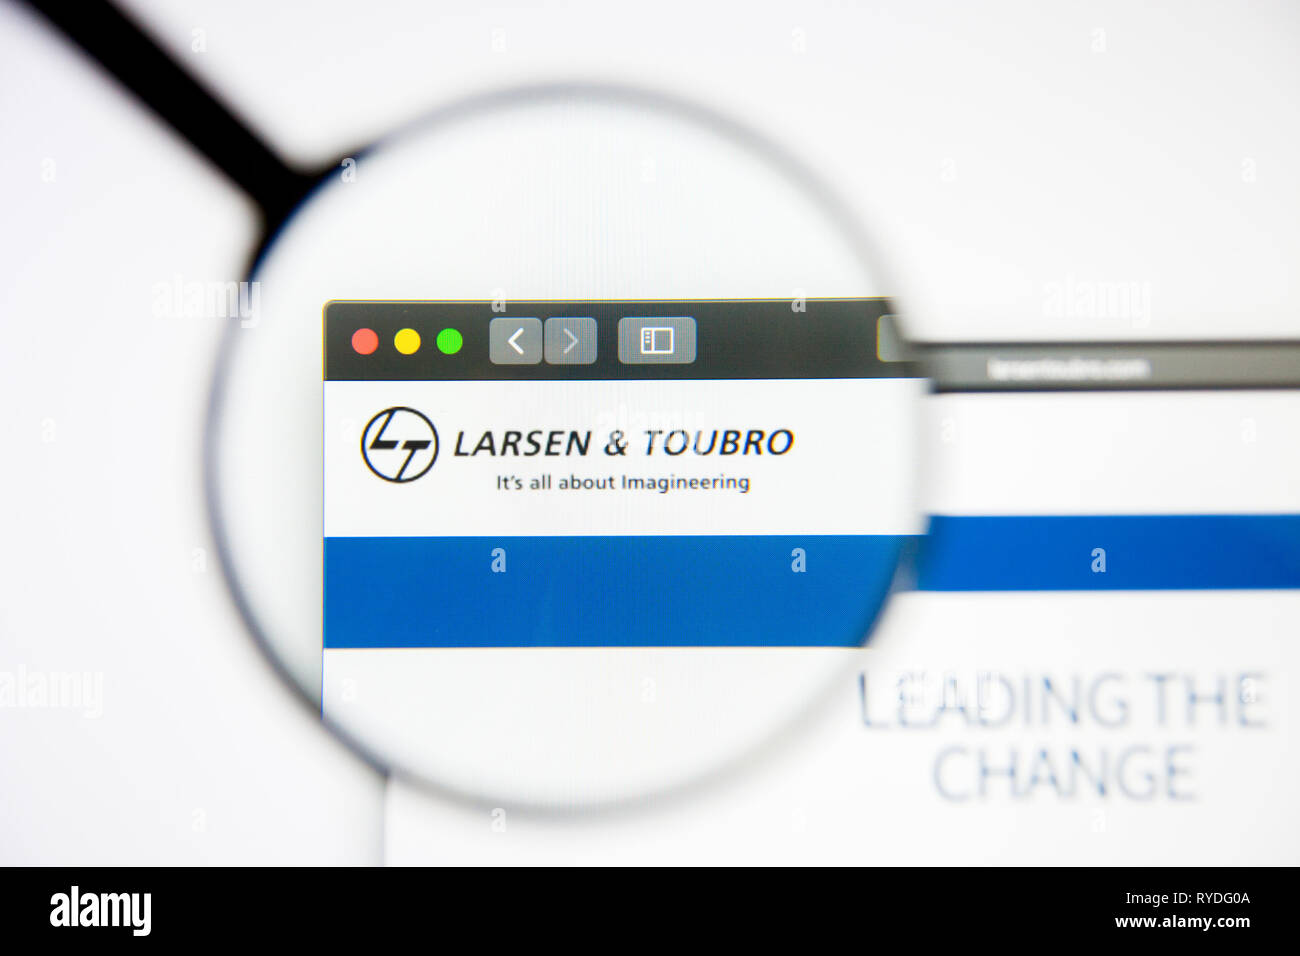 Los Angeles, Kalifornien, USA - 5. März 2019: Larsen und Toubro Homepage. Larsen und Toubro Logo sichtbar auf dem Display, Illustrative Stockfoto